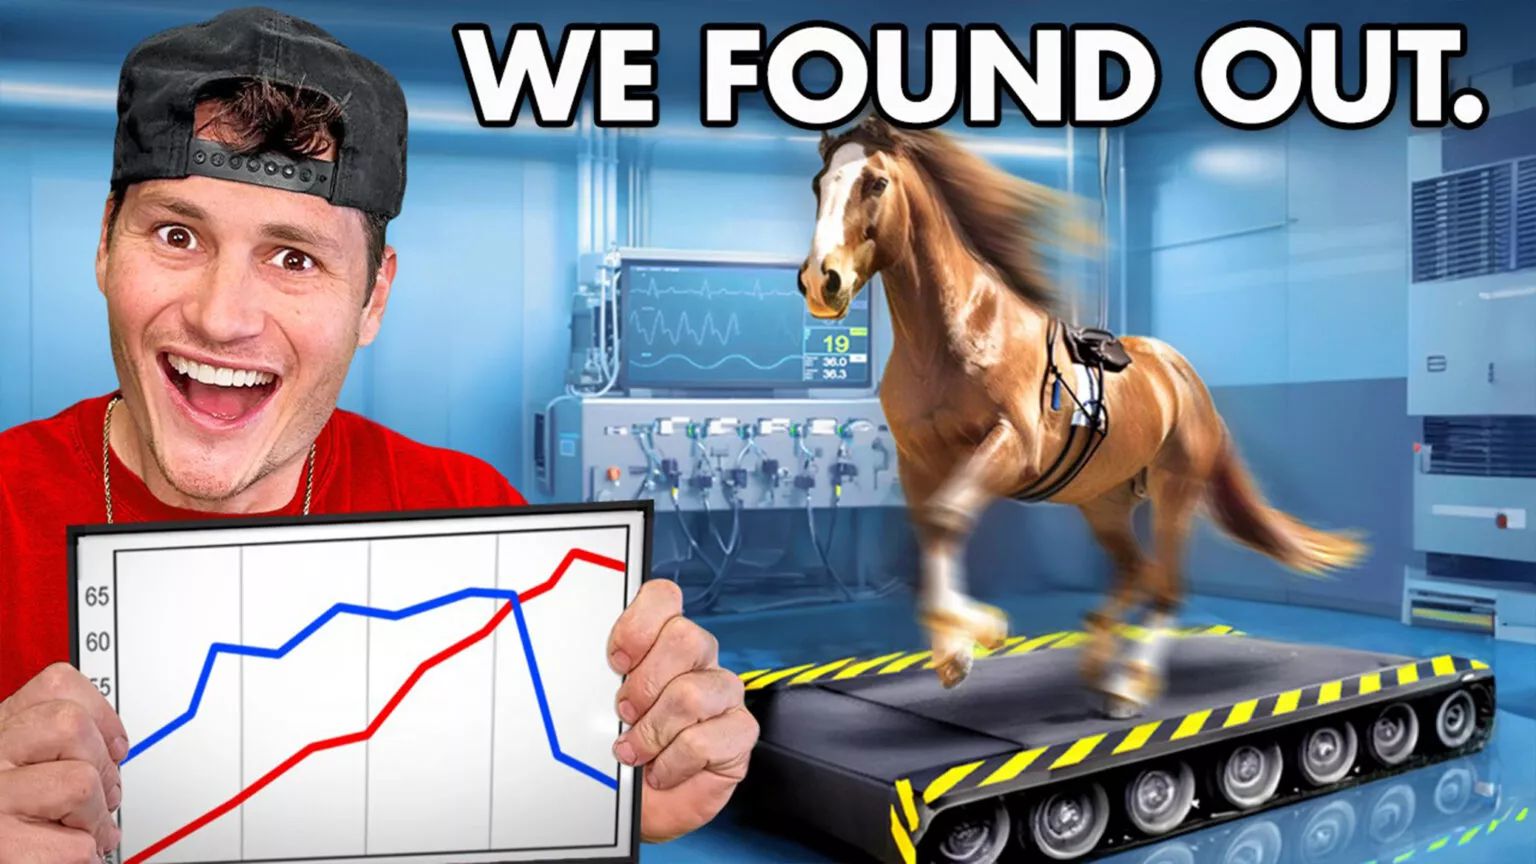 Команда Donut Media проверила на динамометрическом стенде настоящую лошадь, чтобы узнать ее «мощность» (foto:Donut Media)